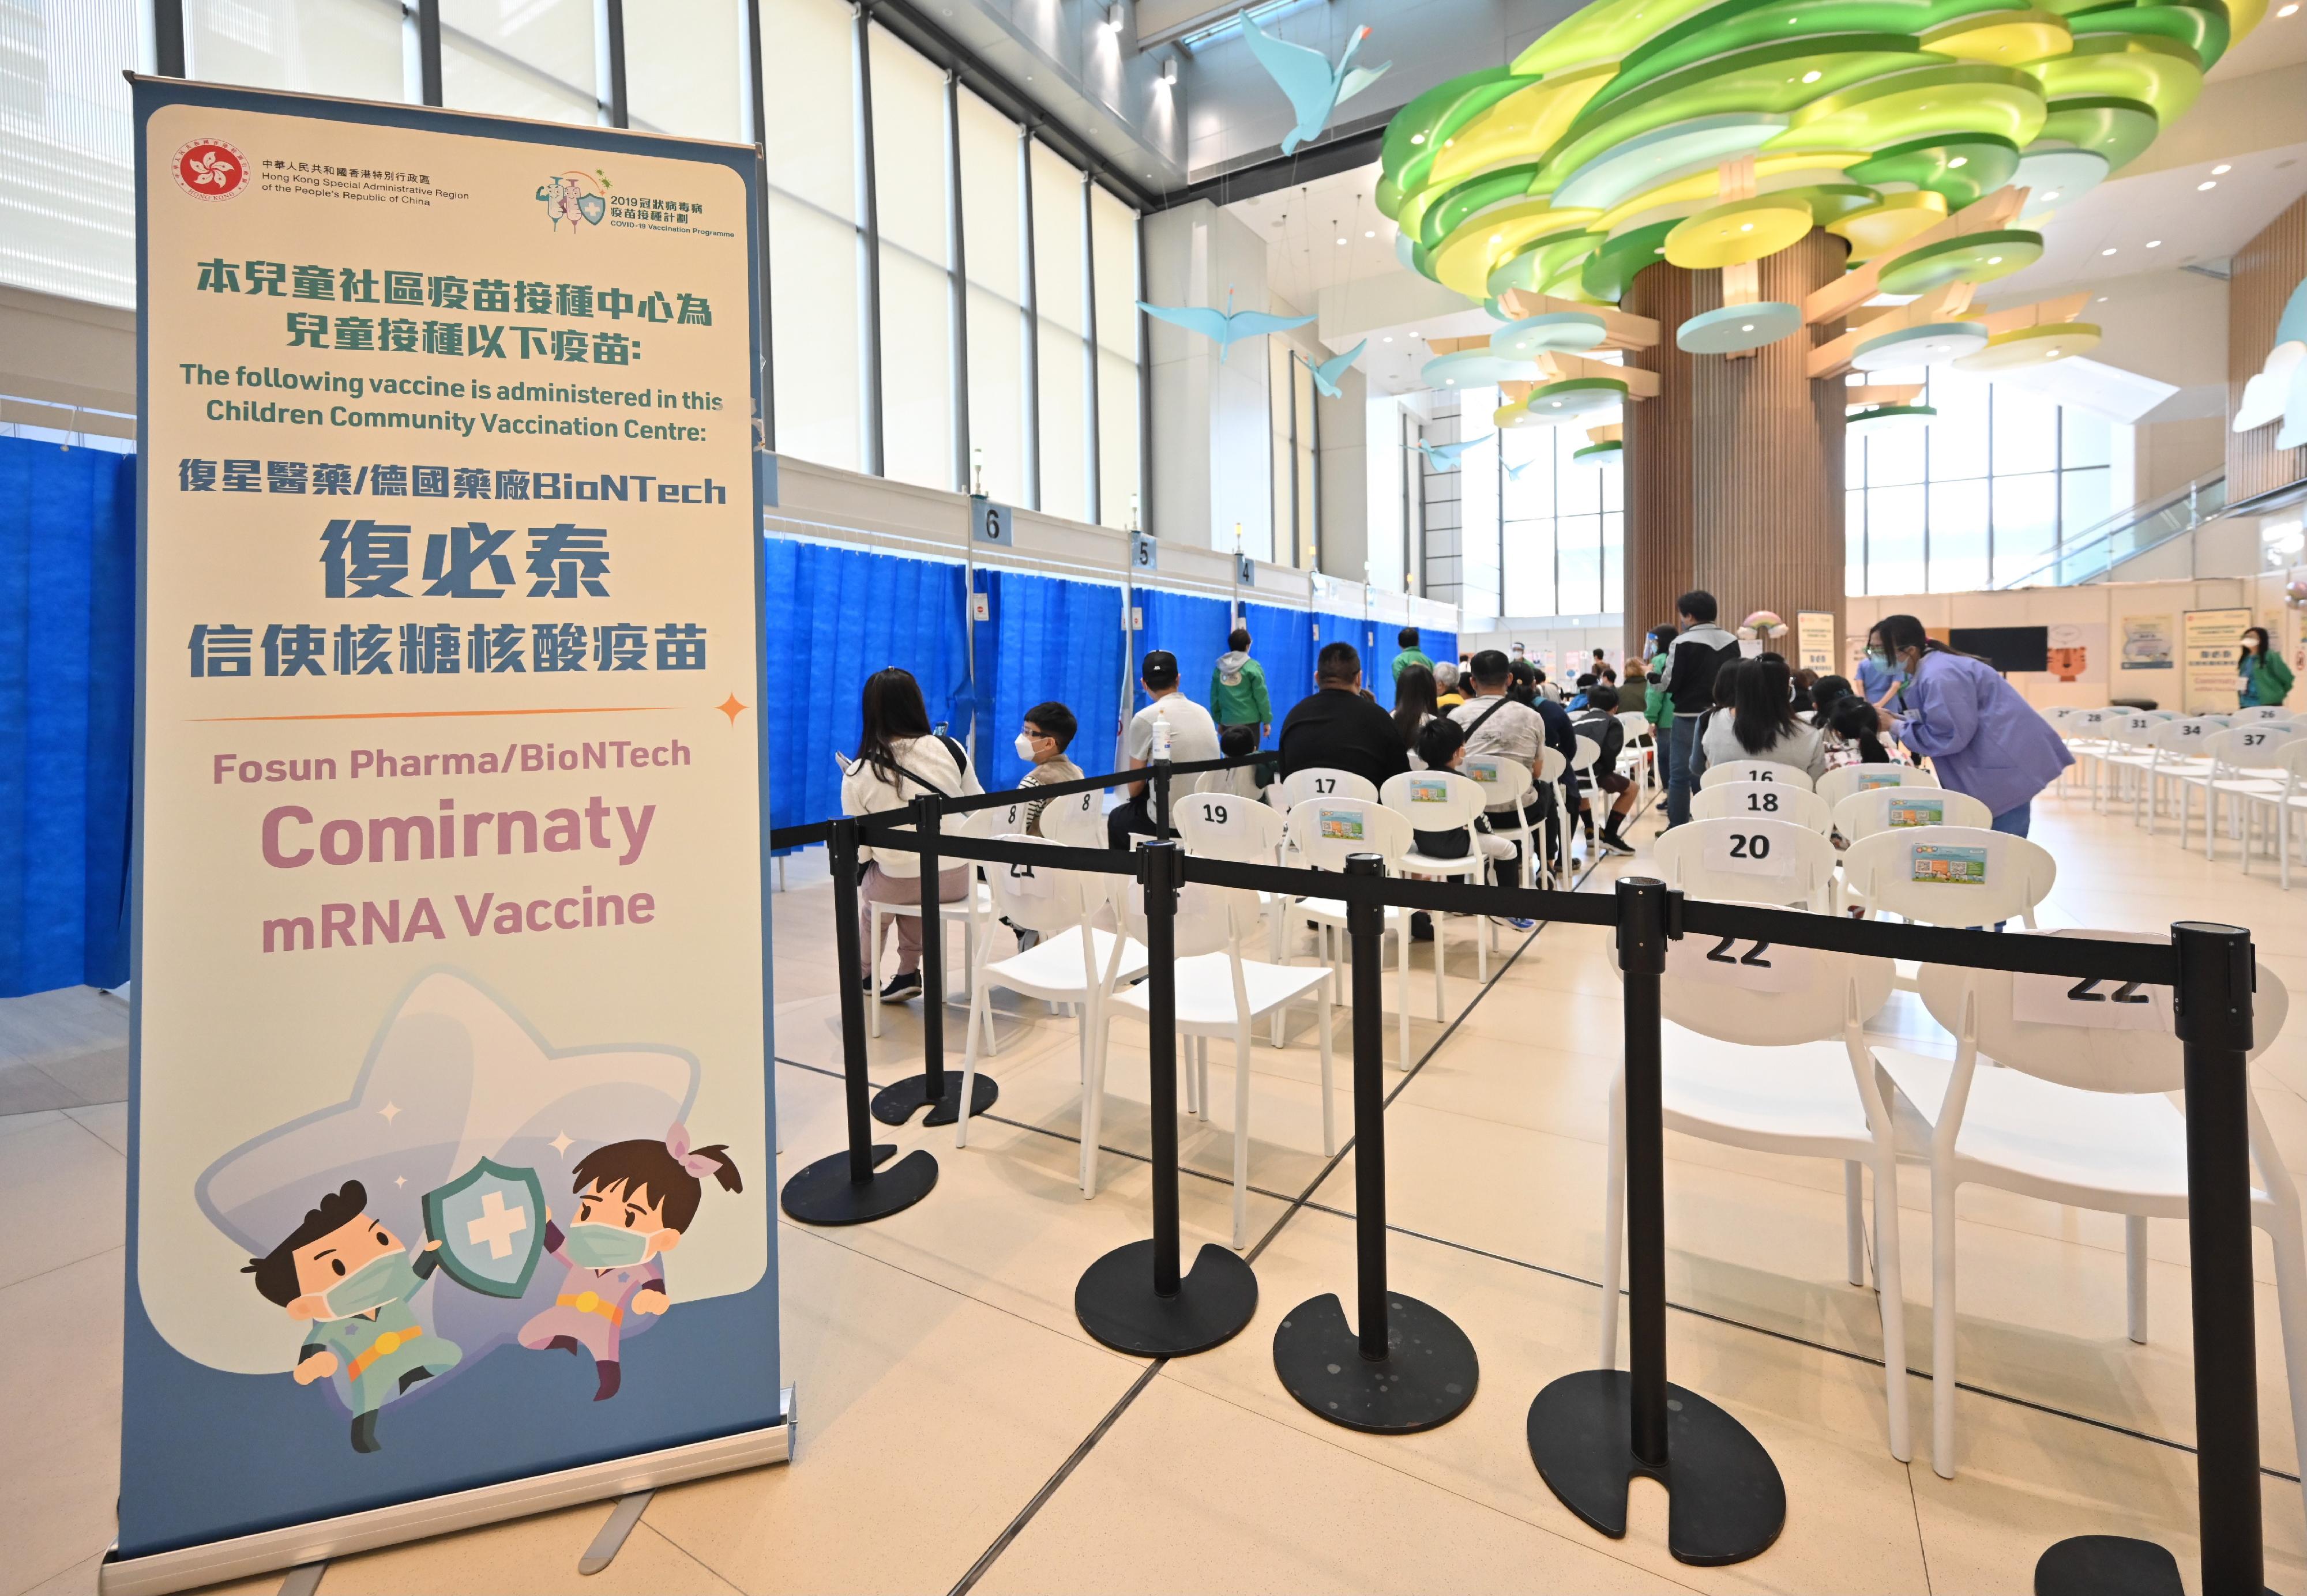 九龙湾香港儿童医院儿童社区疫苗接种中心专为五岁至十一岁儿童接种复必泰疫苗。图示该中心的接种等候区。